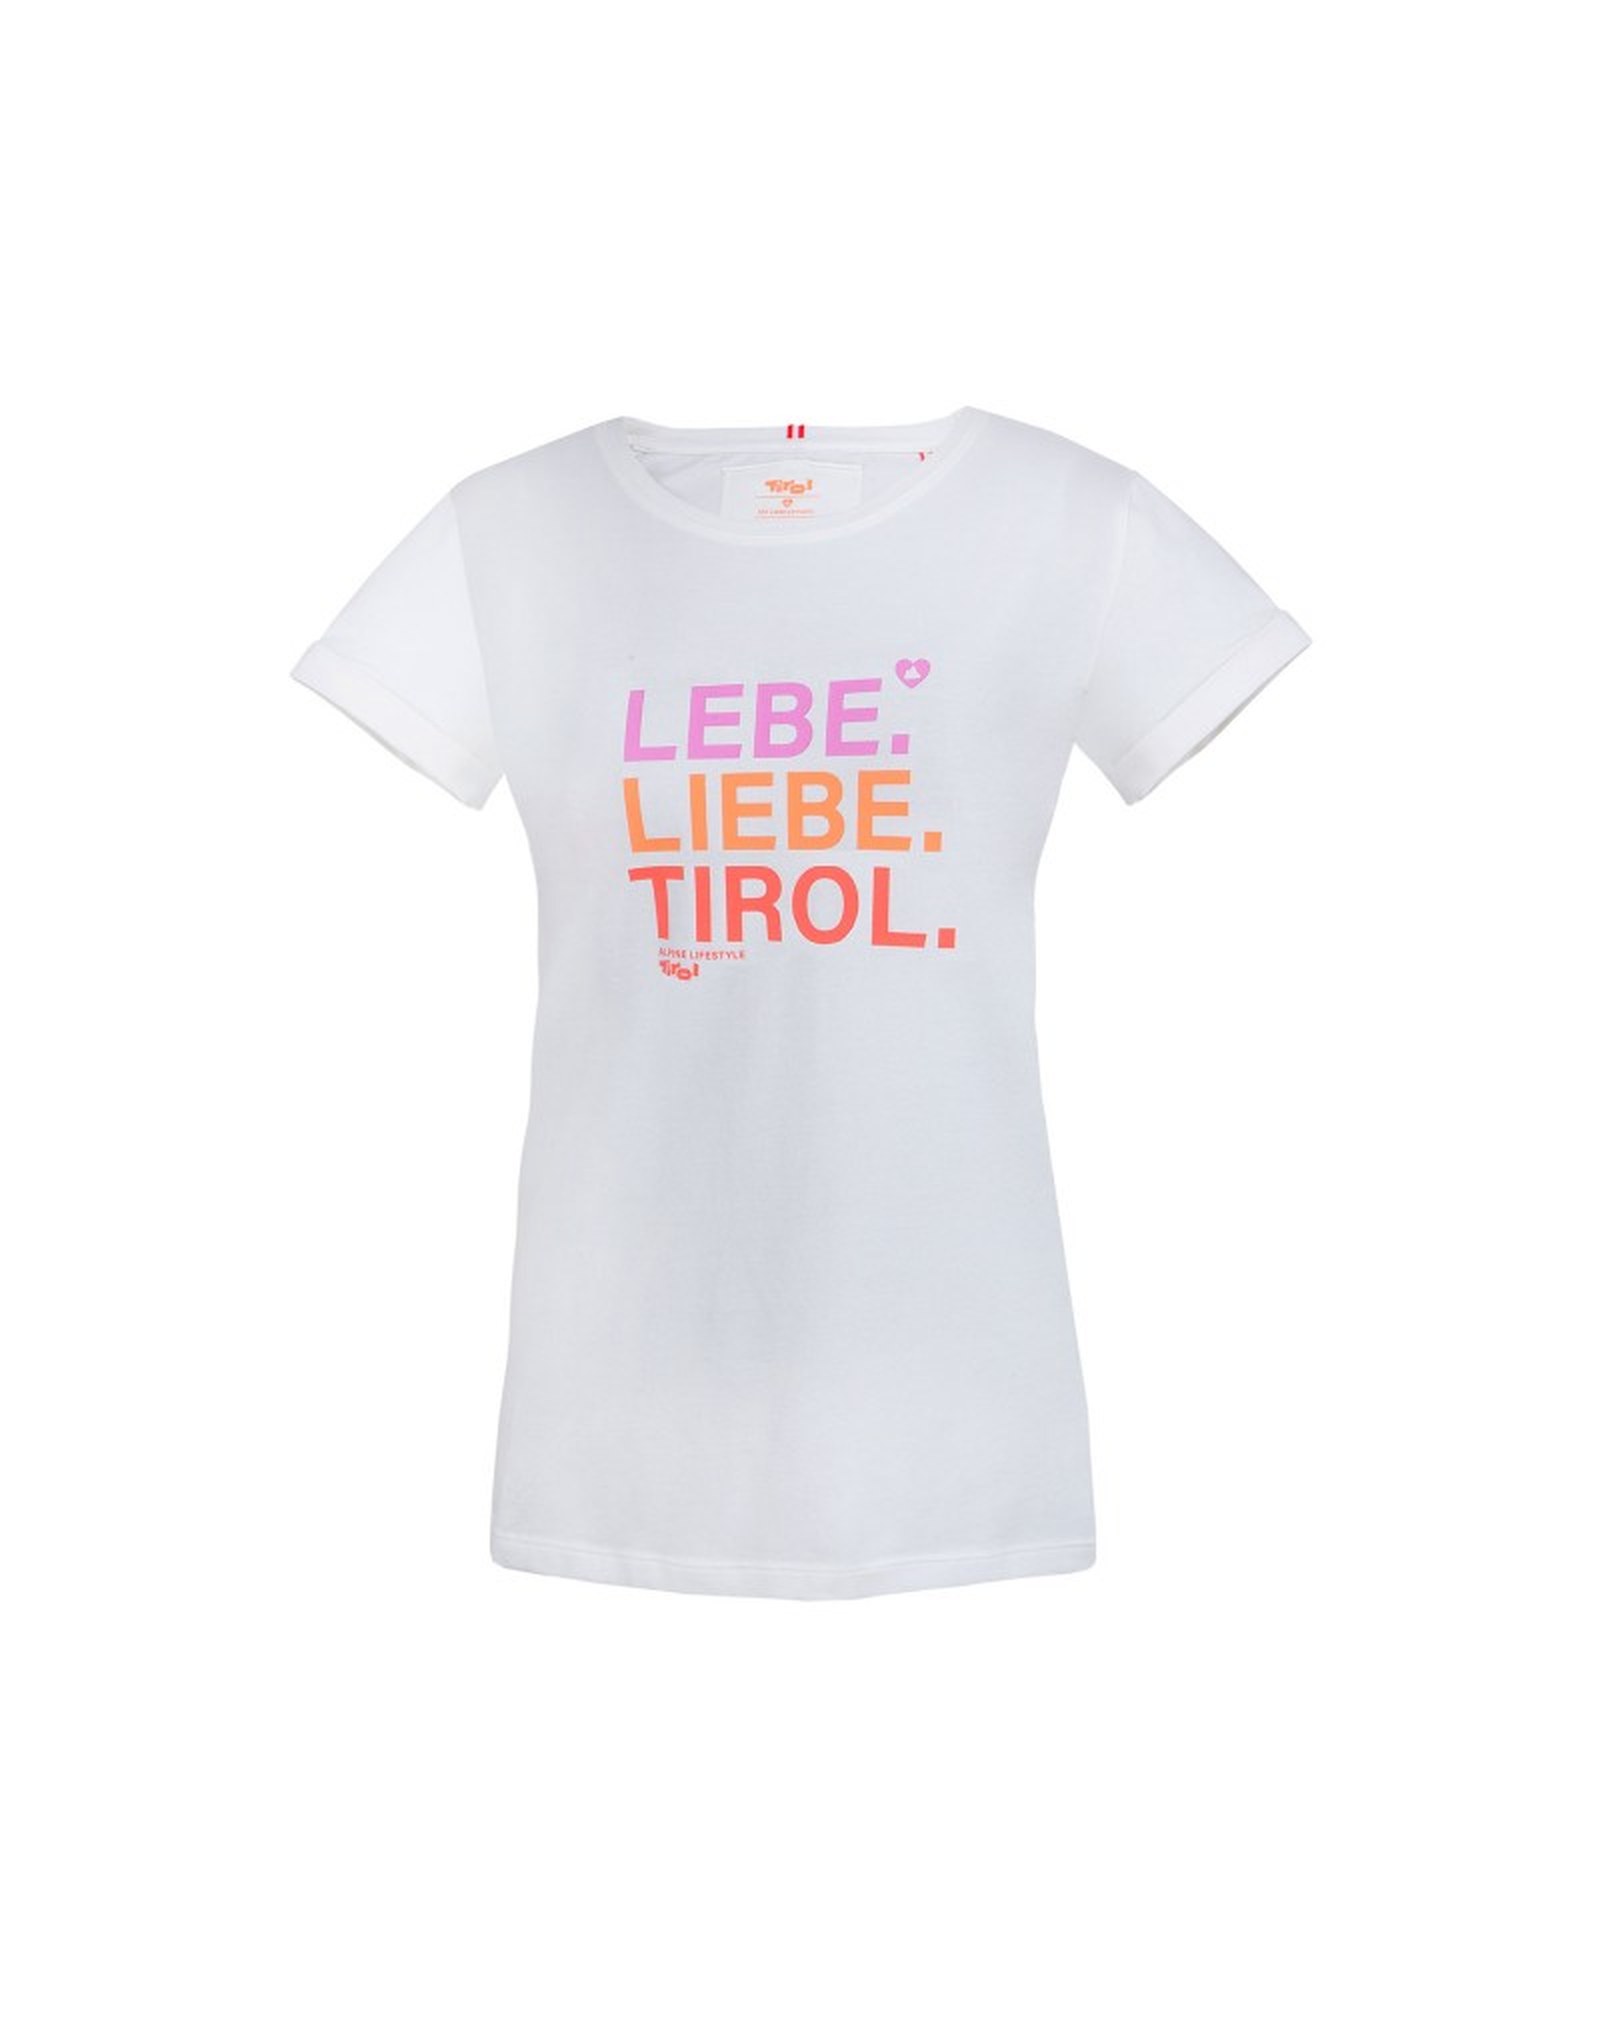 Damen T-Shirt "lebeliebetirol" weiß